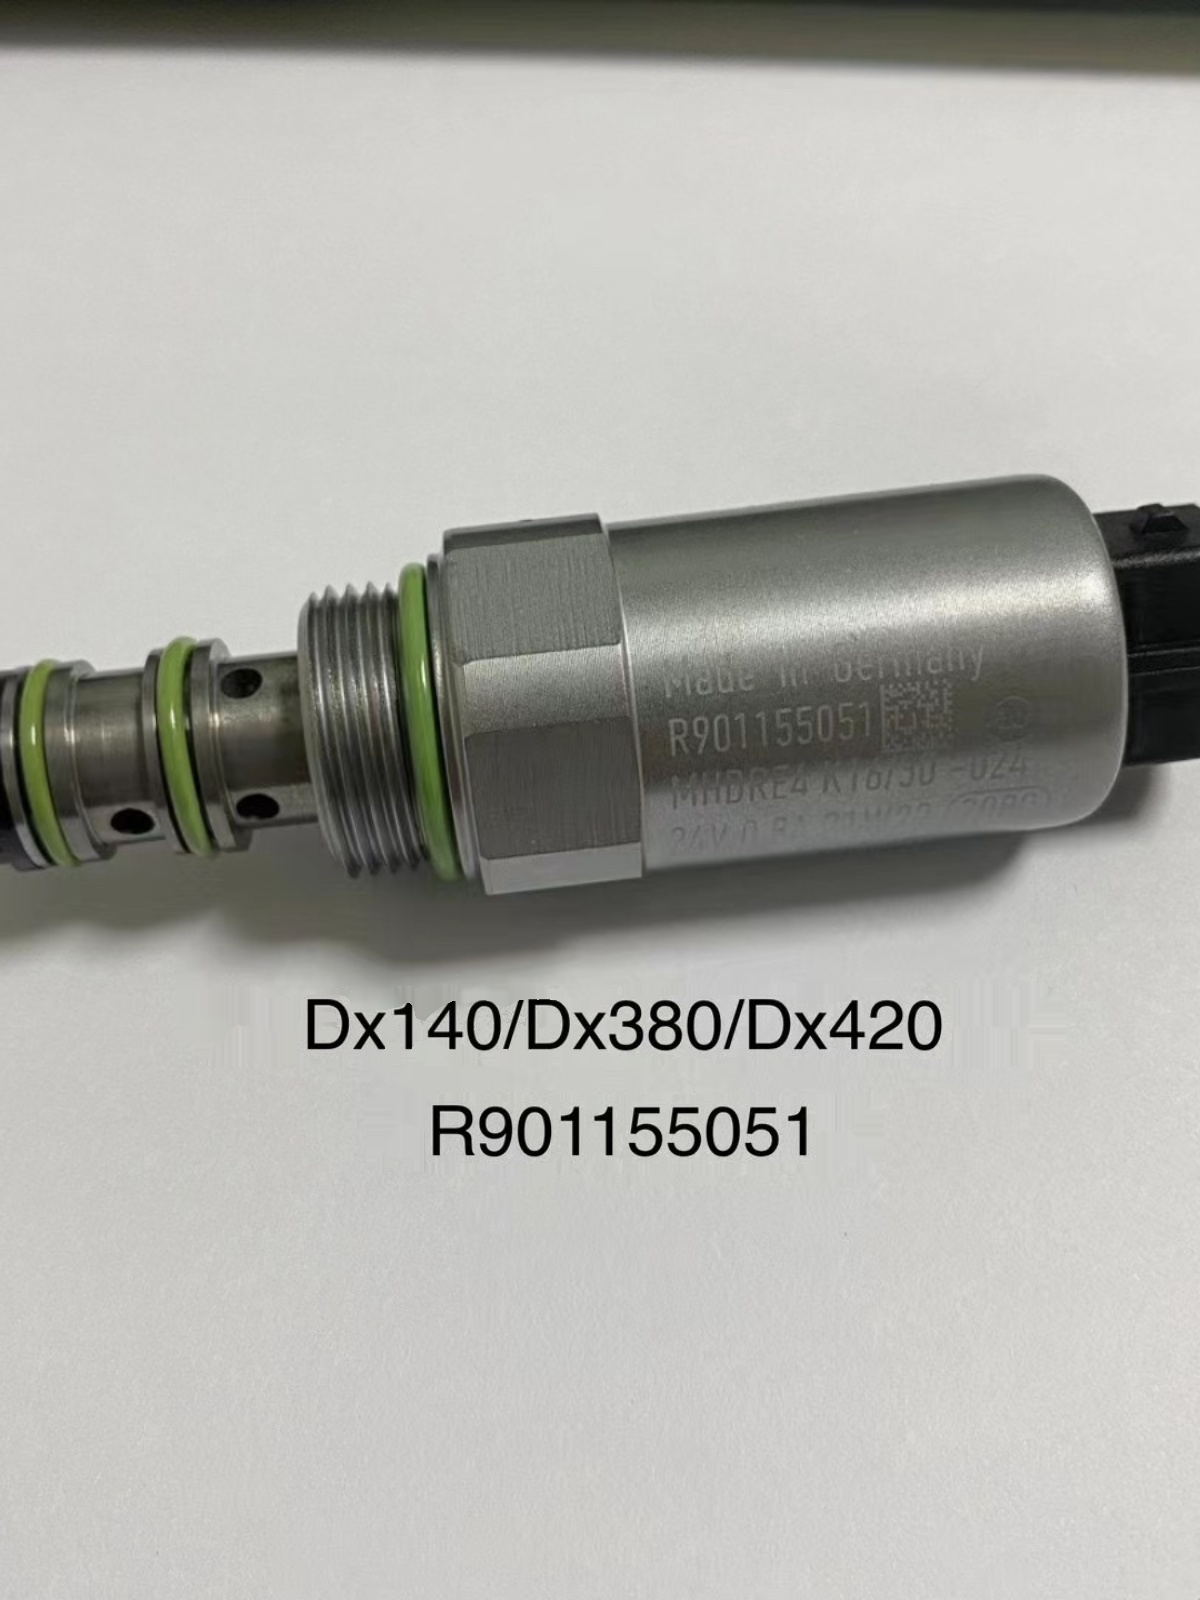 大宇斗山DX140 DX380 DX420-9C挖掘机液压泵比例电磁阀R901155051